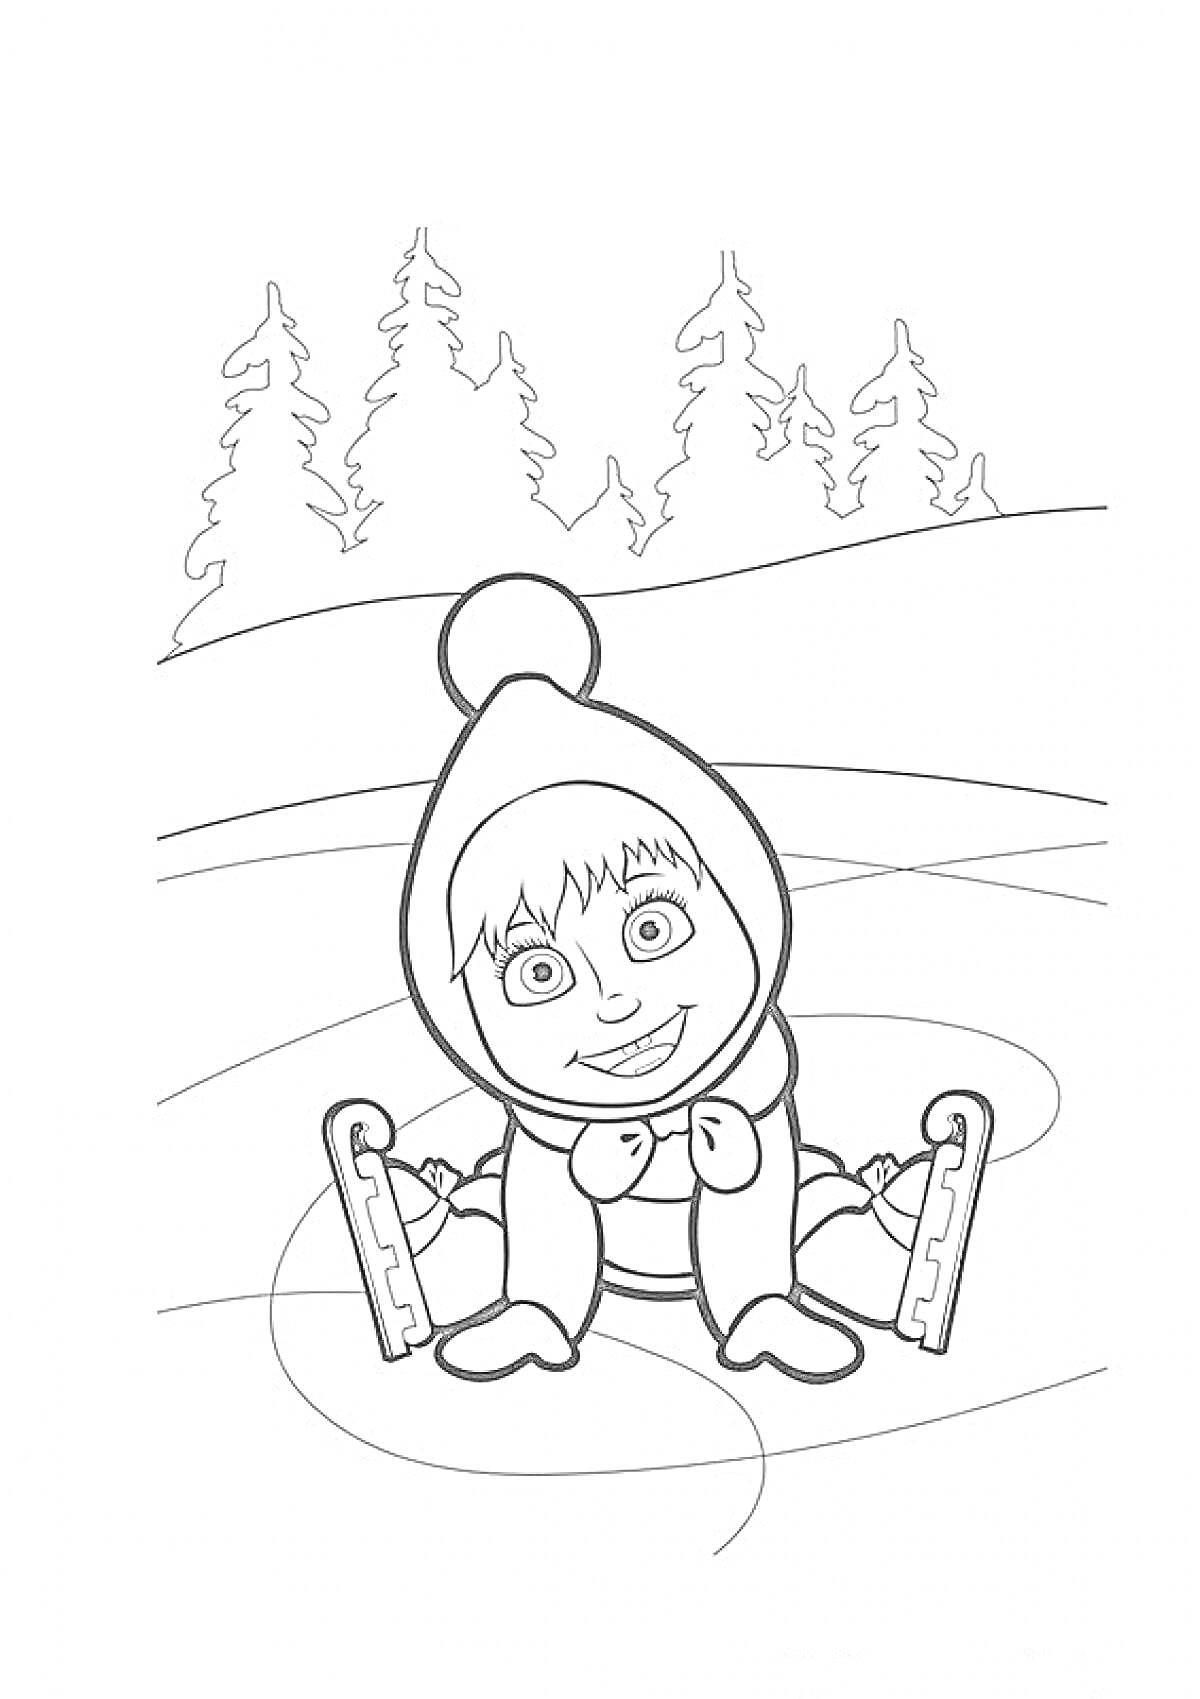 Маша в шапке на коньках на замерзшем пруду с лесом на заднем плане